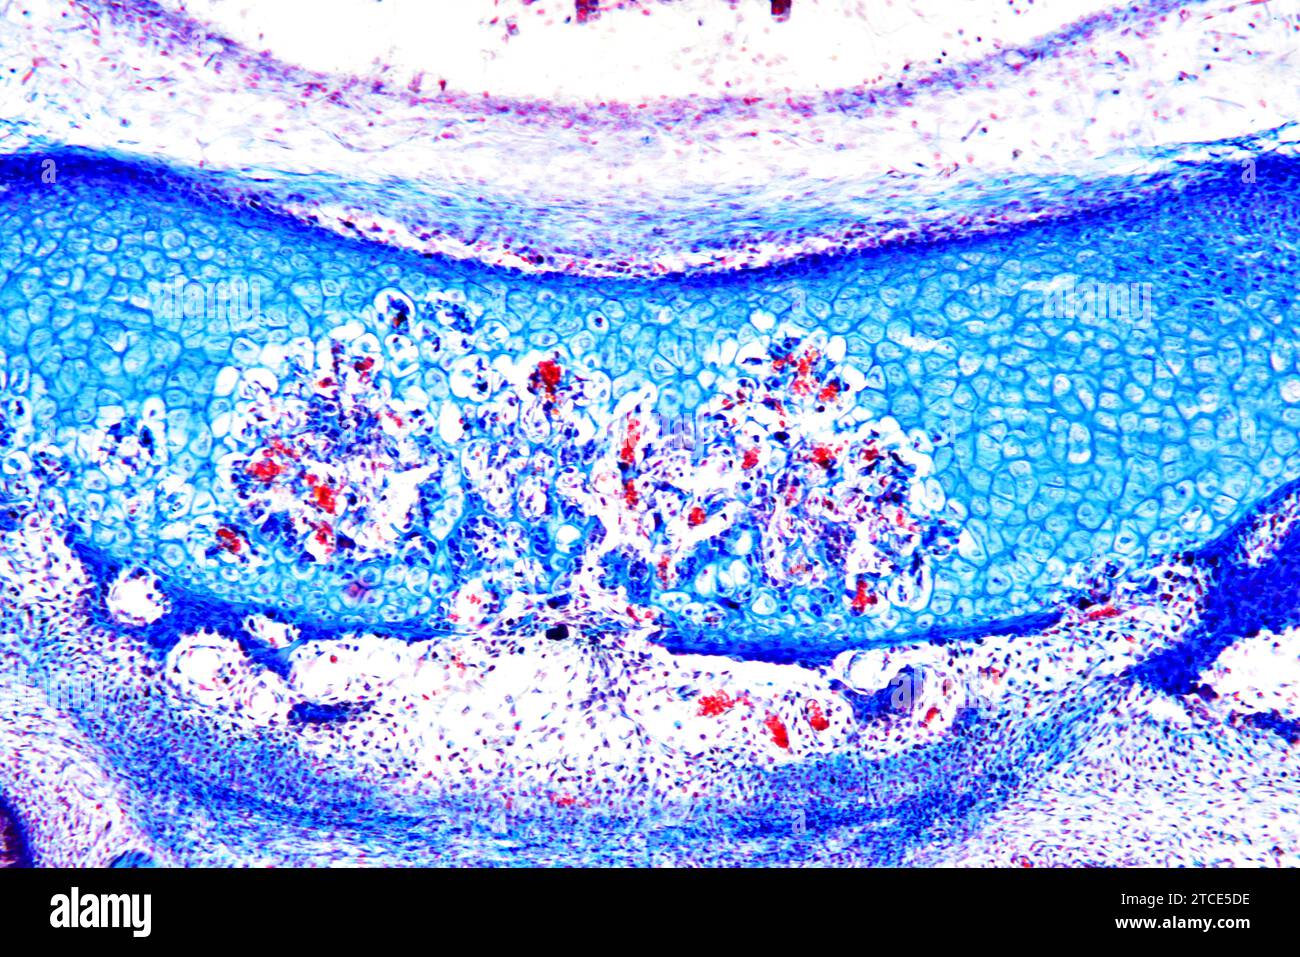 Tissu cartilagineux élastique de l'oreille montrant les chondrocytes, les fibres d'élastine et la matrice. Microscope optique X100. Banque D'Images